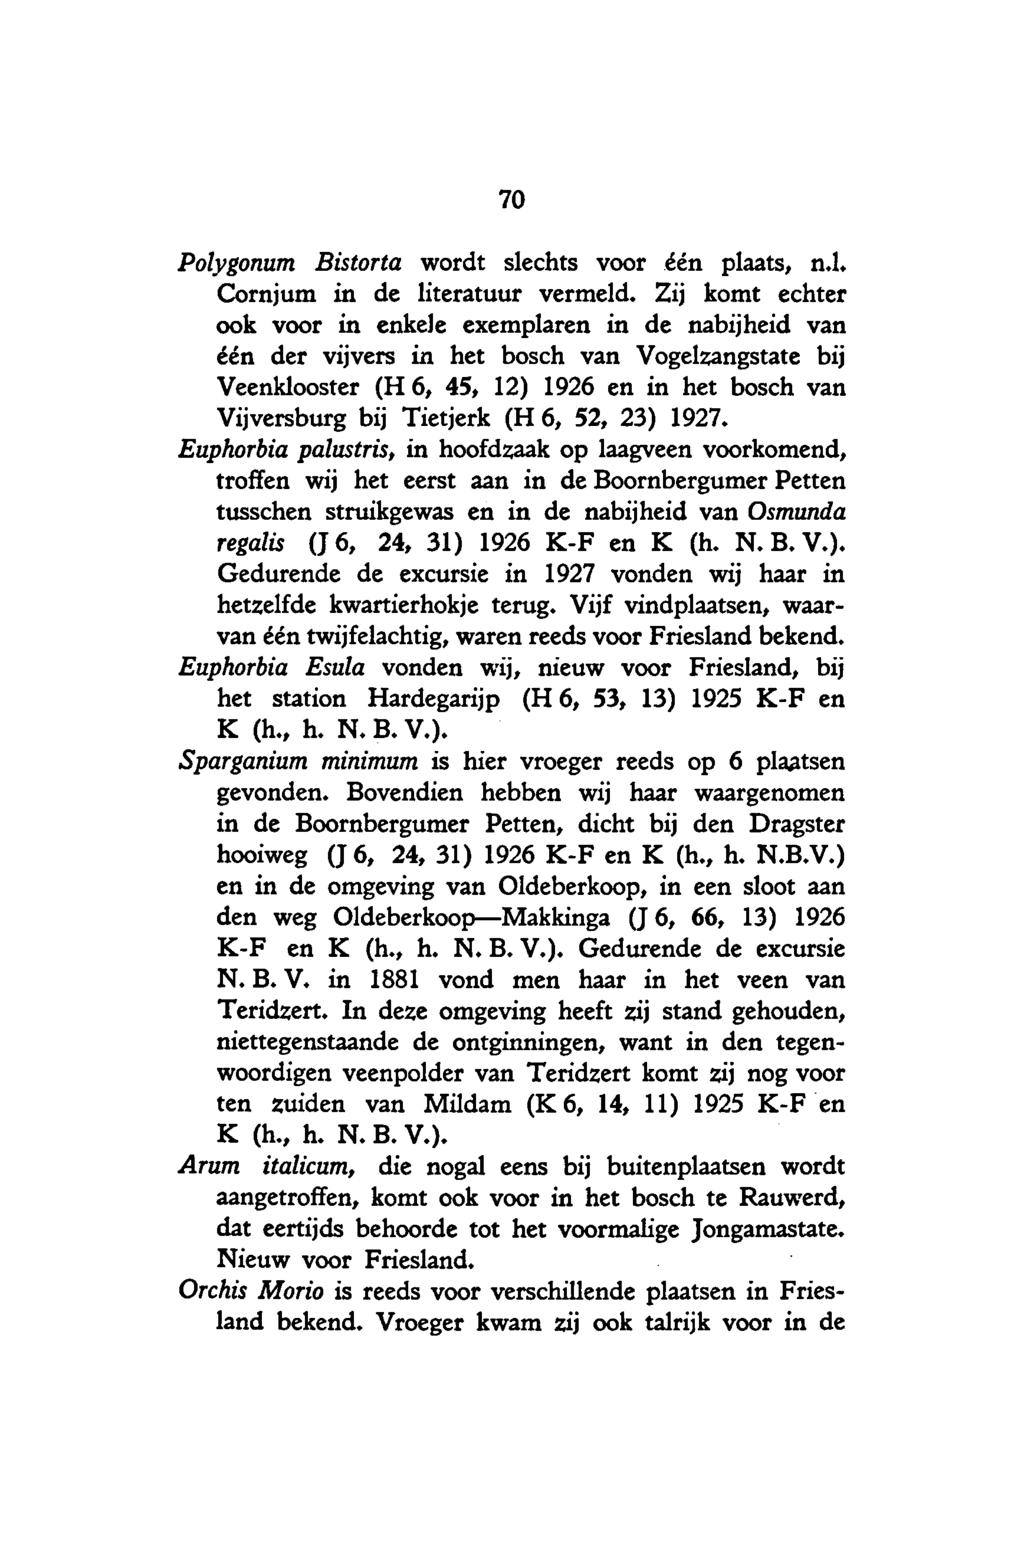 70 Polygonum Bistorta wordt slechts voor één plaats, n.1. Cornjum in de literatuur vermeld.